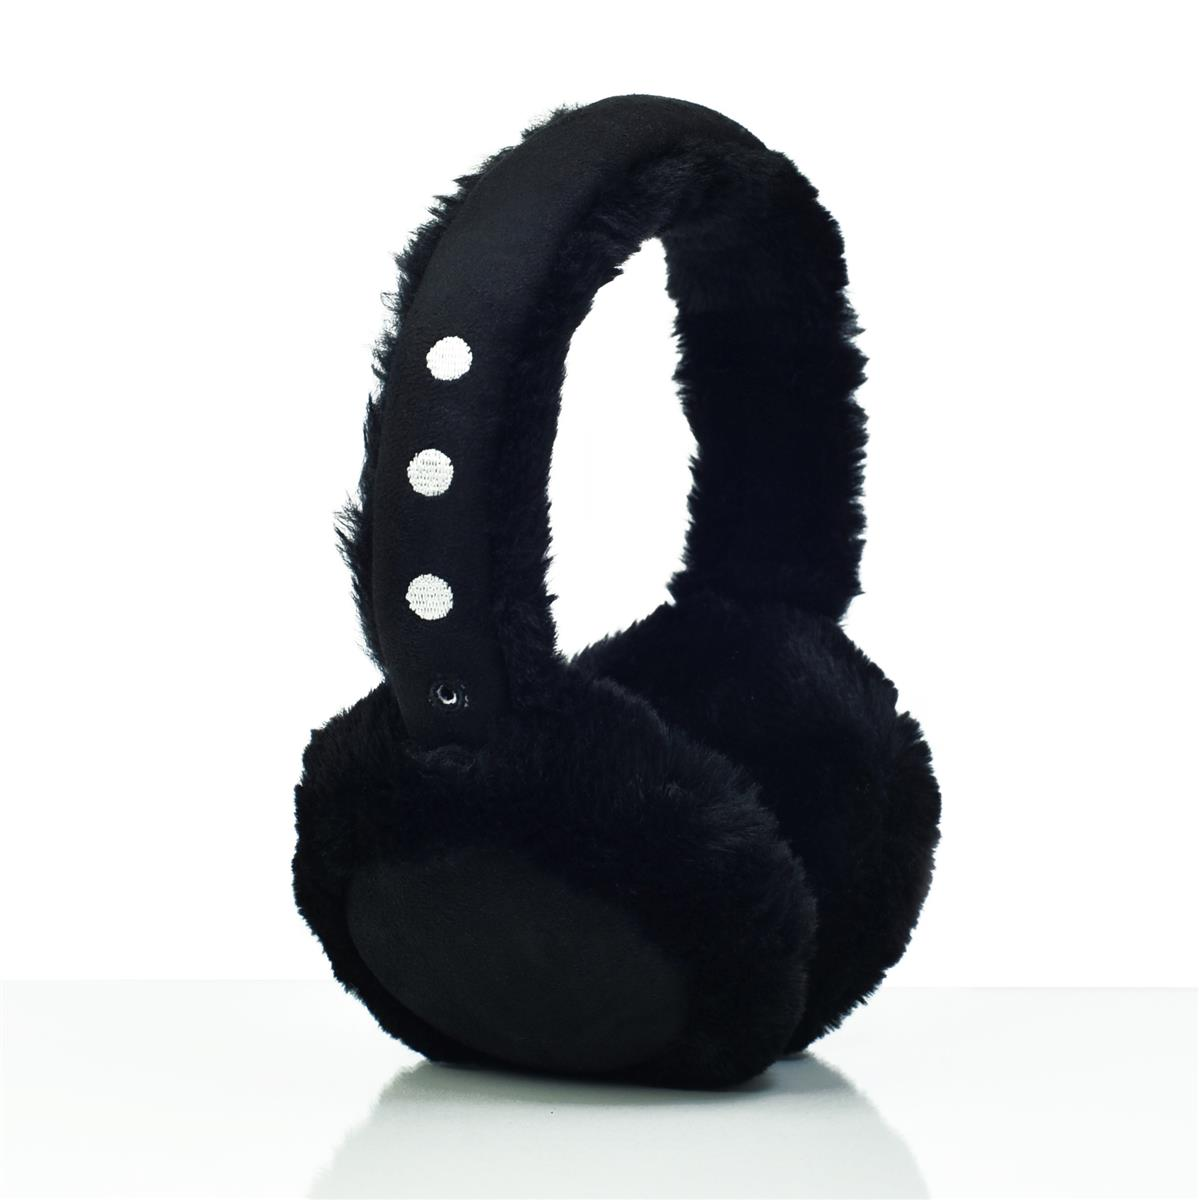 EP18122, LEICKE schwarz Kopfhörer On-ear Ohrenschützer-Kopfhörer